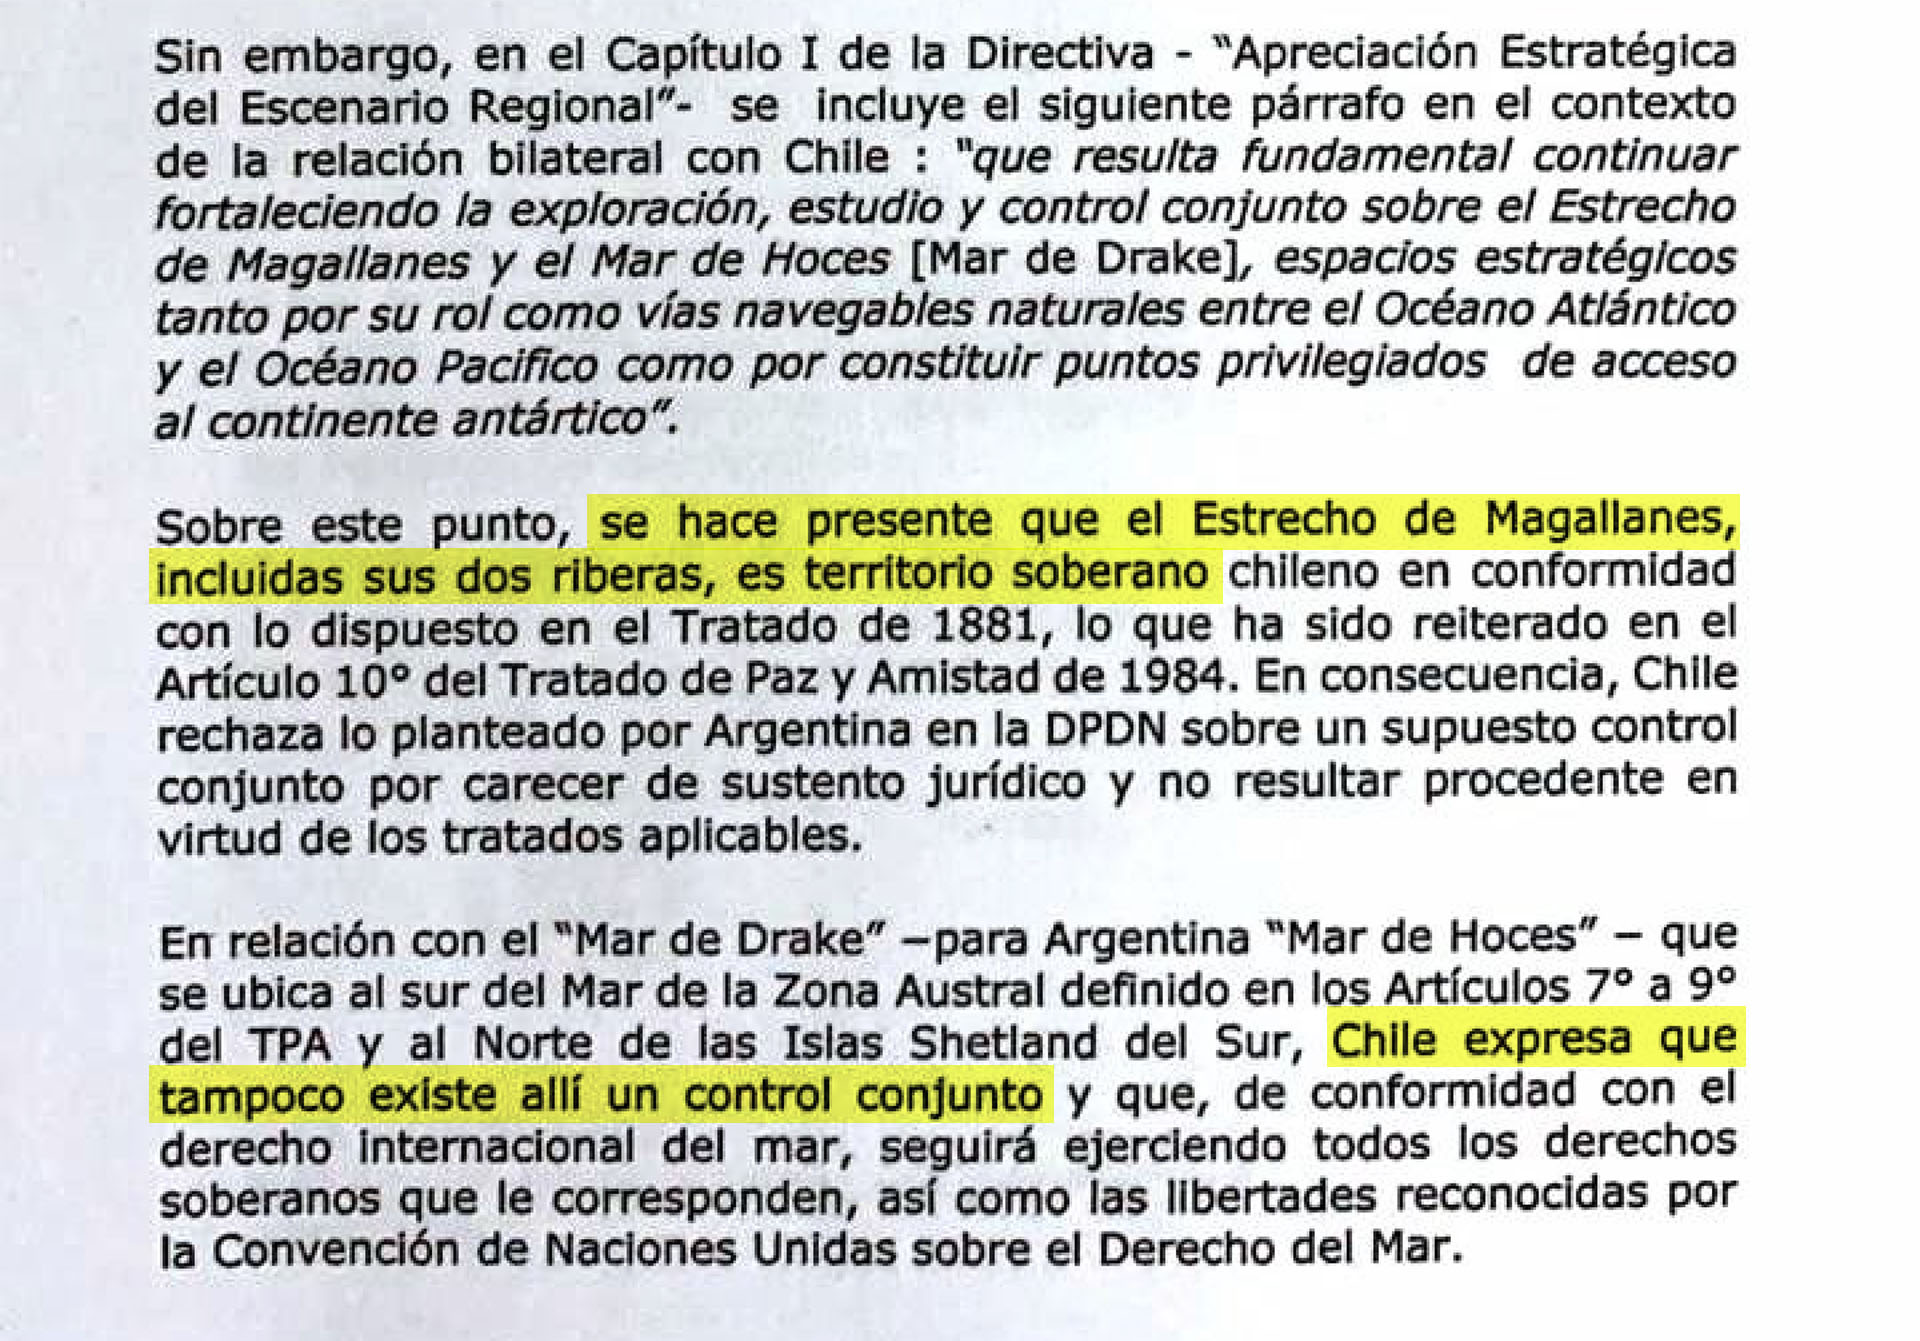 La réplica del gobierno chileno se envió luego de un tiempo prudencial a la espera de una rectificación por parte de la Cancillería Argentina